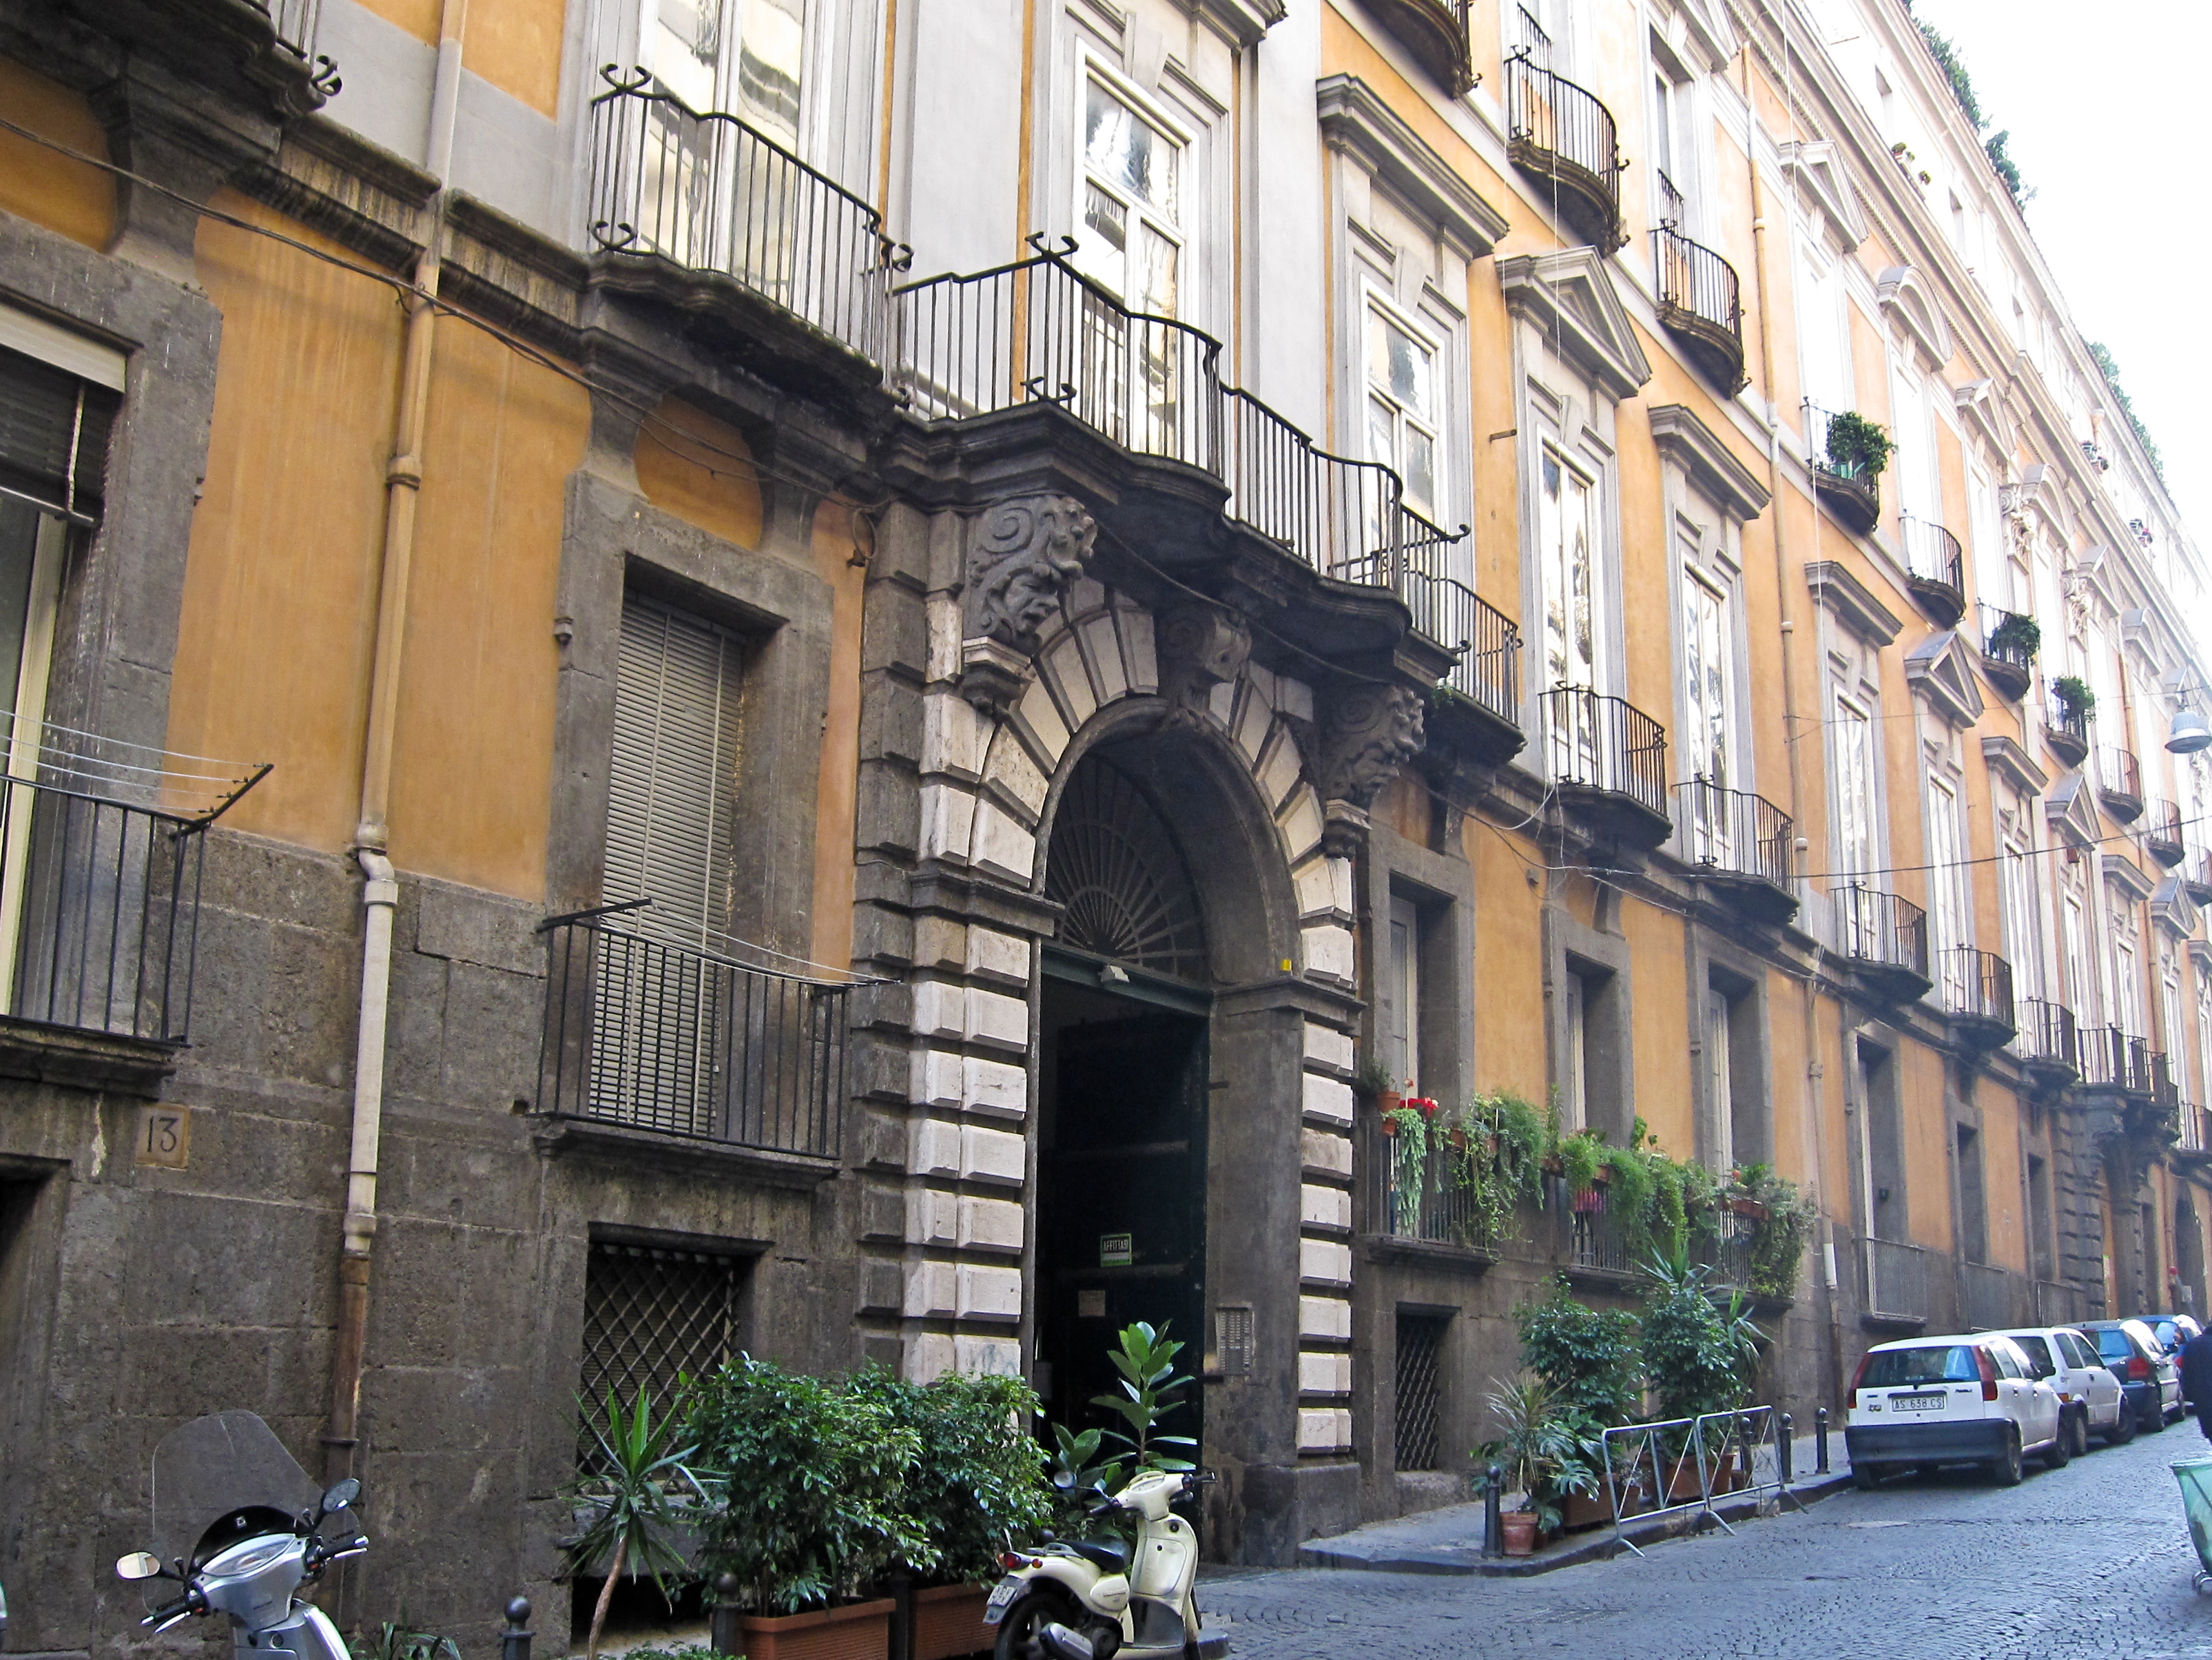 Armando Mancini, Via Monte di Dio con l'ingresso del palazzo. Palazzo Serra di Cassano - Napoli, 2010, fotografia digitale